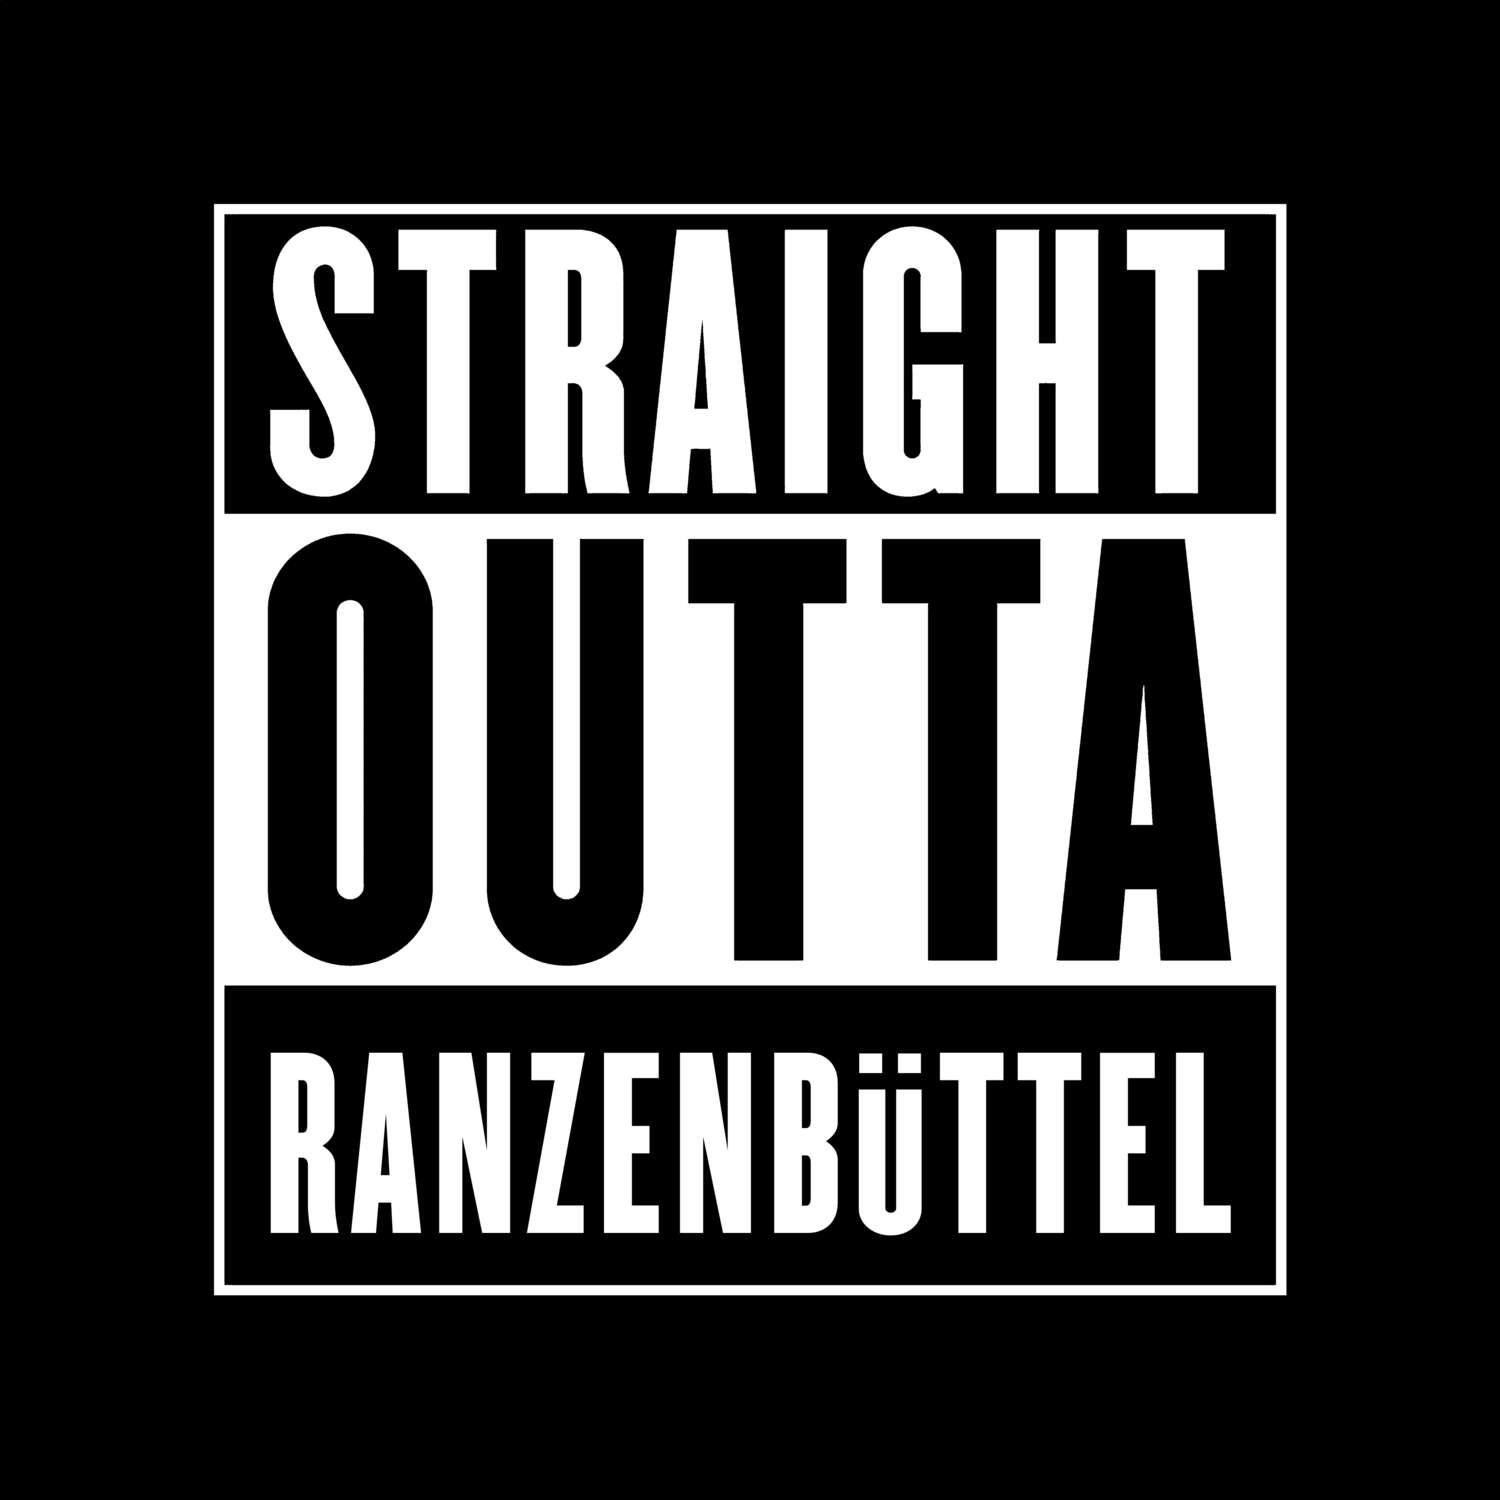 Ranzenbüttel T-Shirt »Straight Outta«